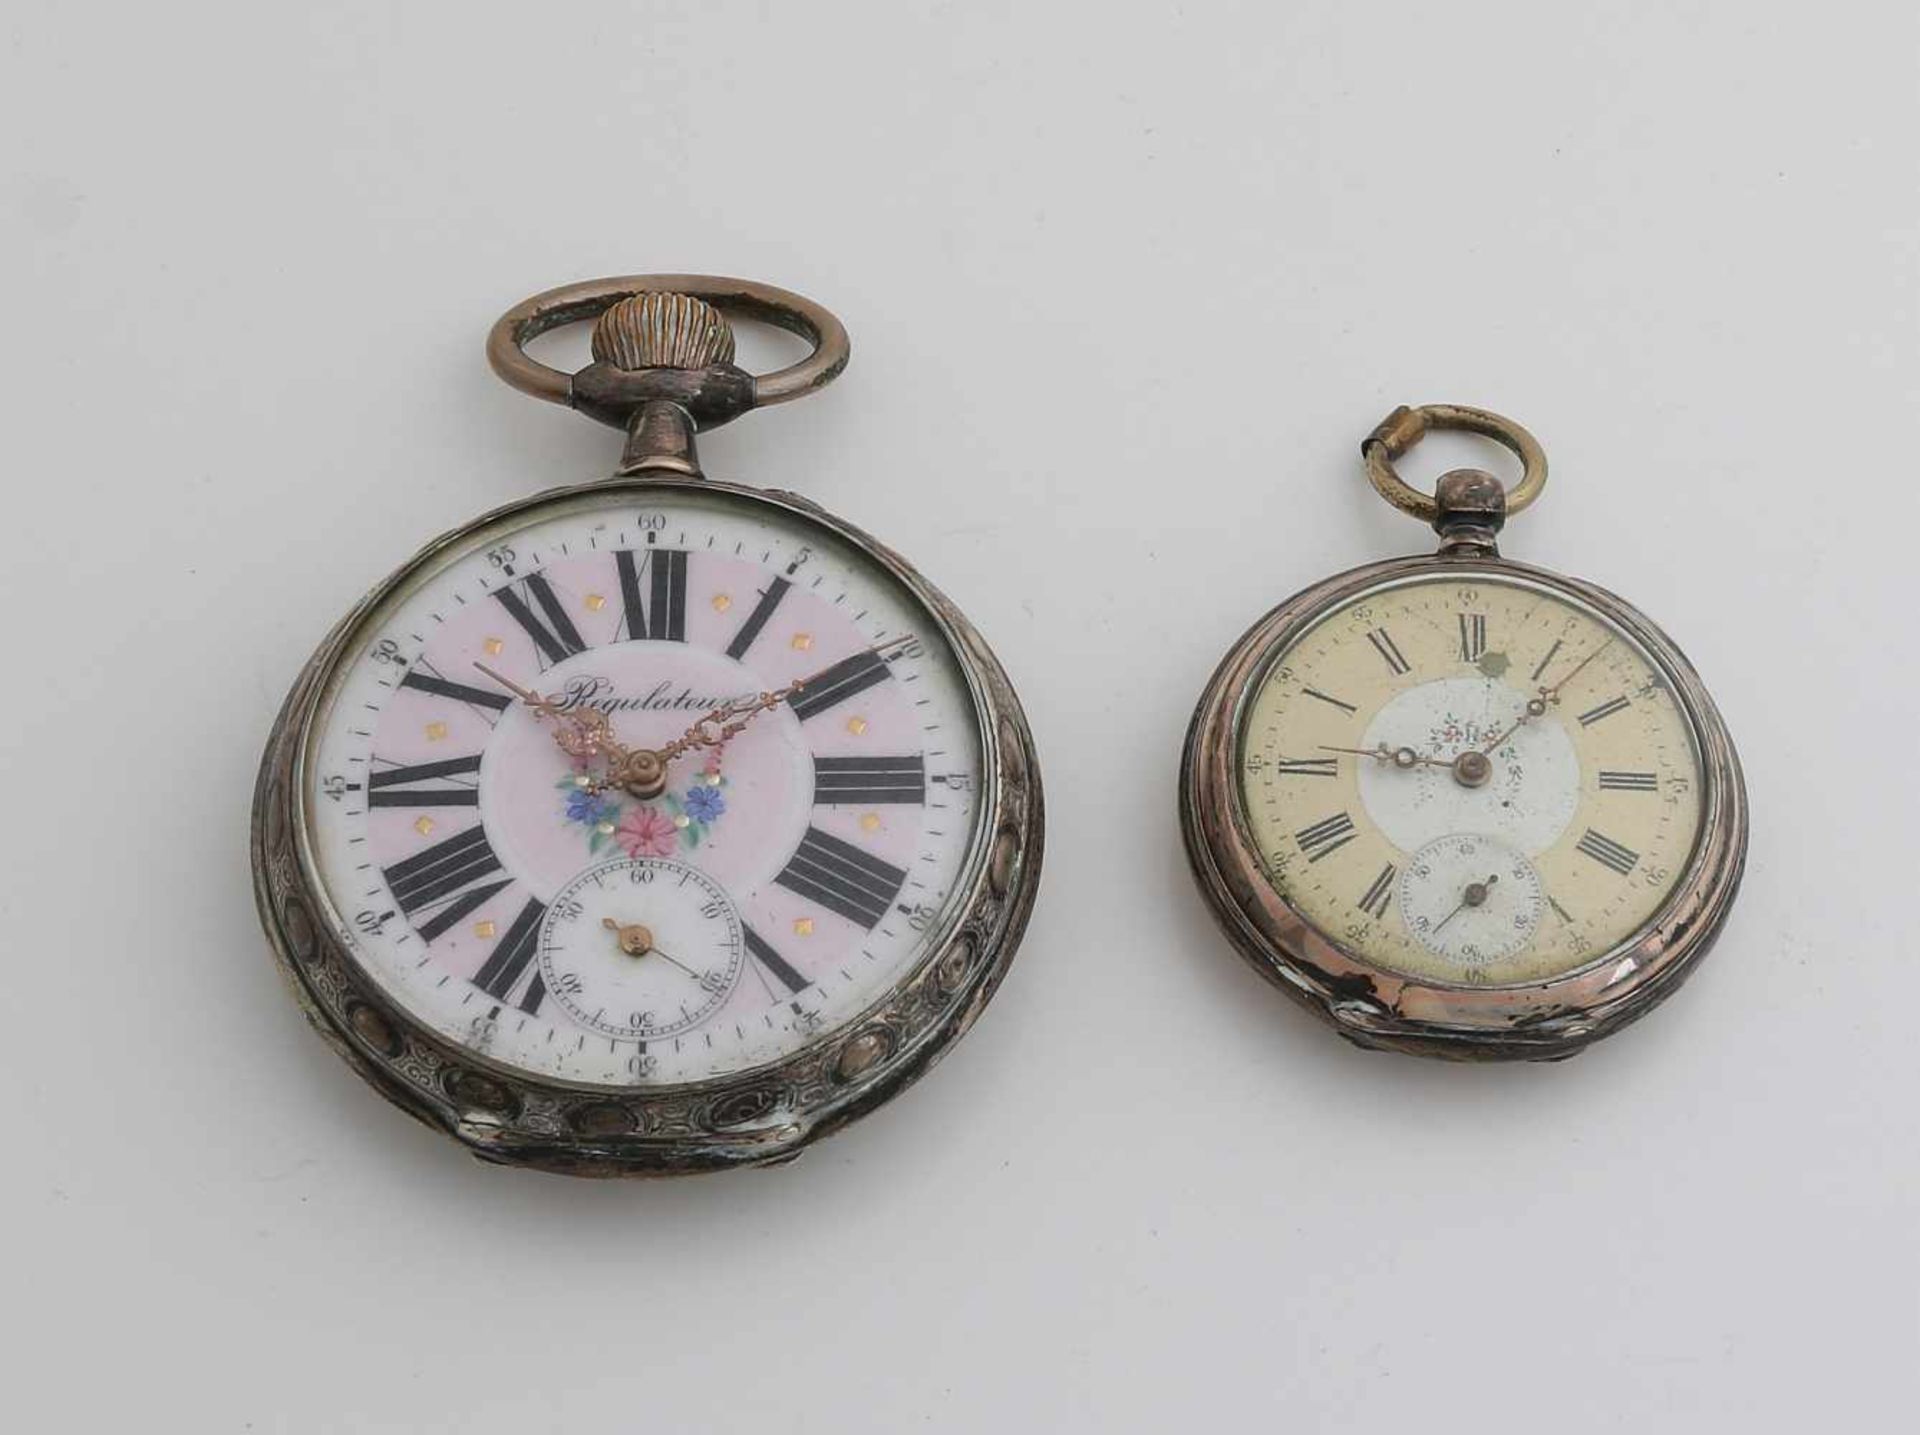 Zwei silberne Taschenuhren, 800/000, eine große Uhr mit verziertem Rand und auf der Rückseite eine